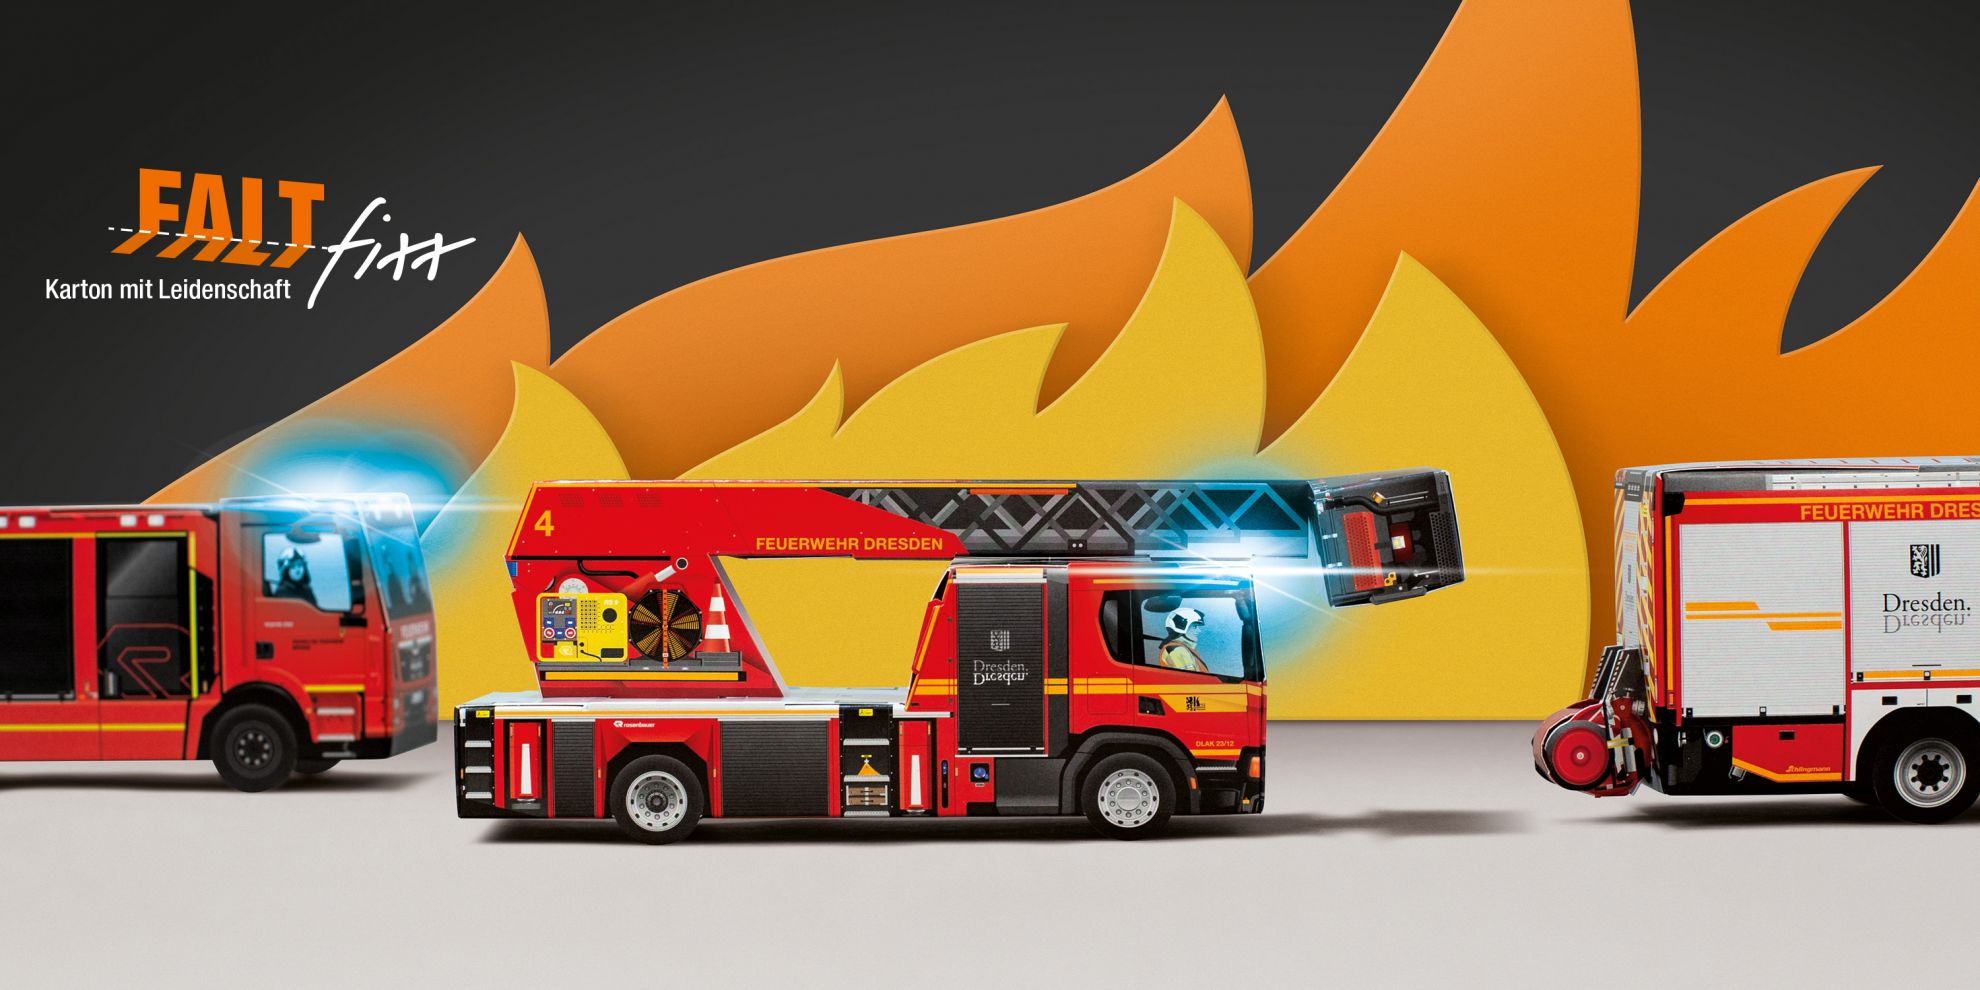 Bild zeigt drei zusammengesteckte Feuerwehrfahrzeuge aus den Faltfixx Bastelbögen, diese stehen vor künstlich erzeugten Flammen